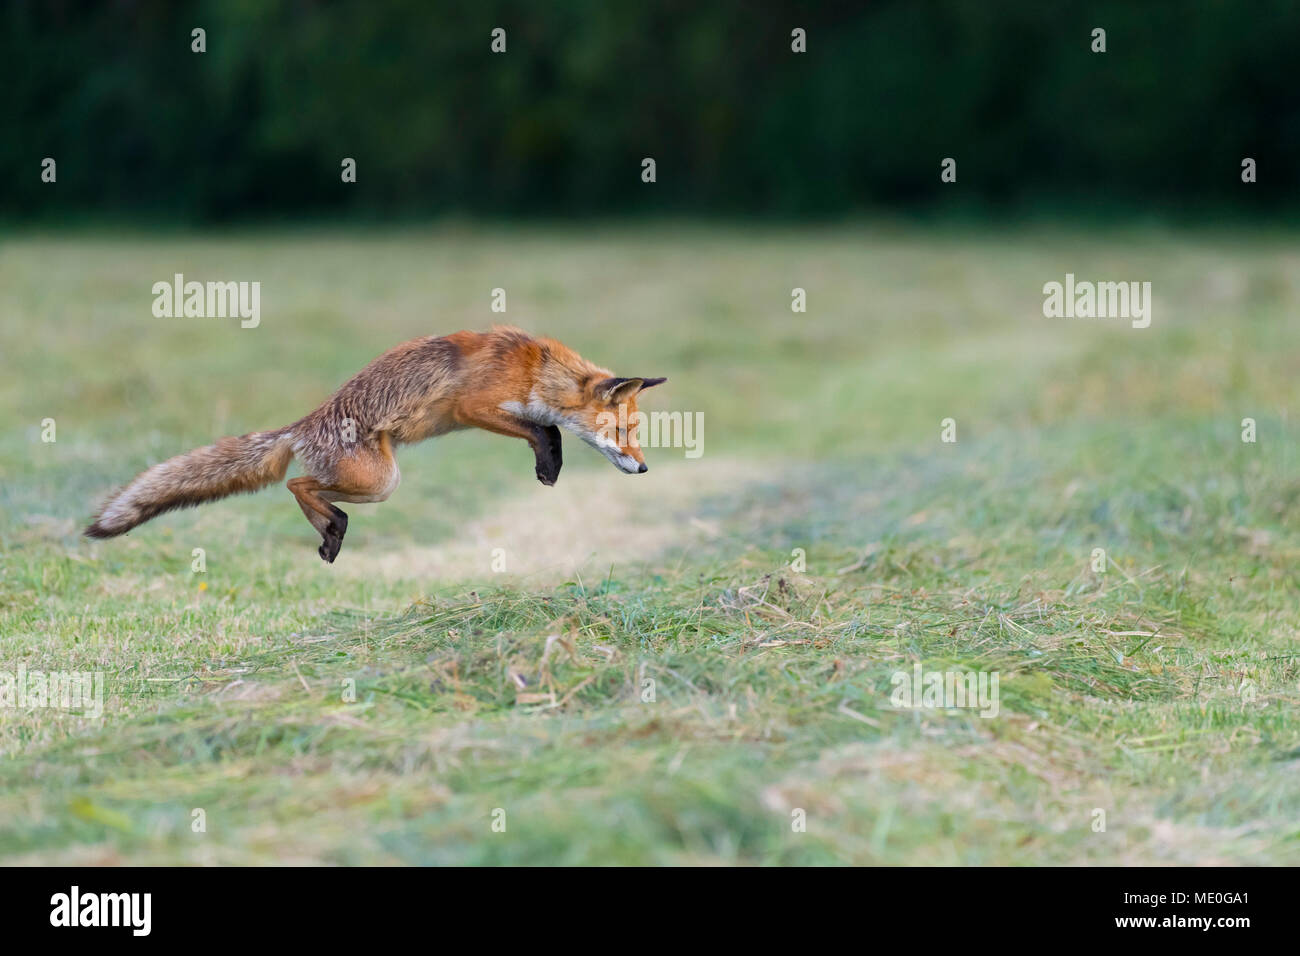 Profil von Red Fox (Vulpes vulpes) springen in die Luft auf eine gemähte Wiese in Hessen, Deutschland Stockfoto